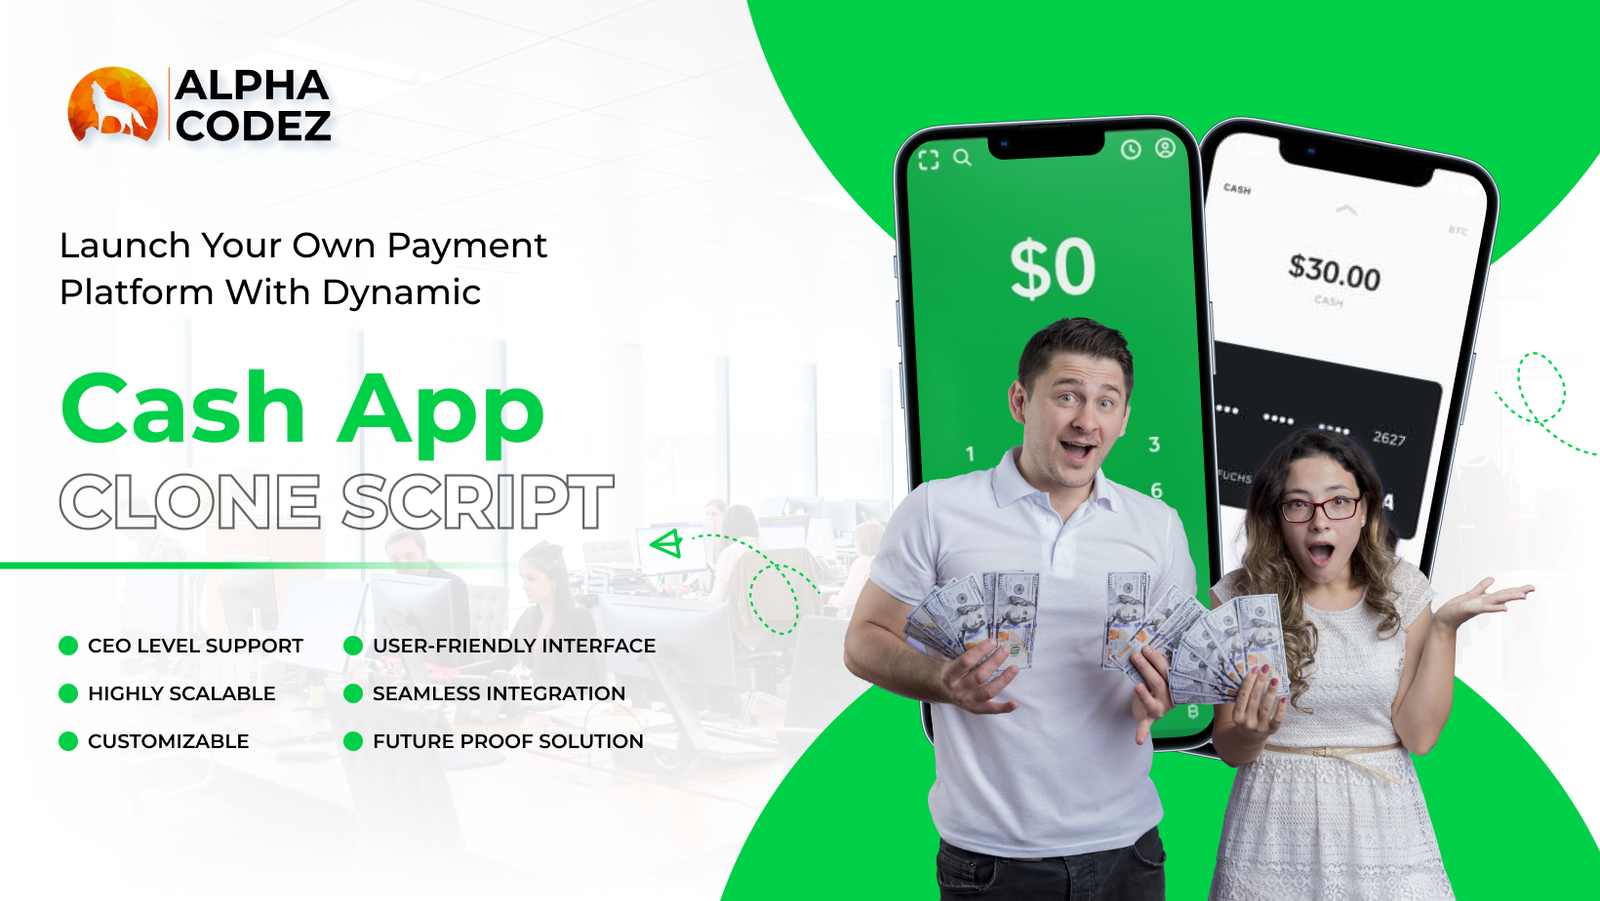 Cash App clone script | Build your own payment platform